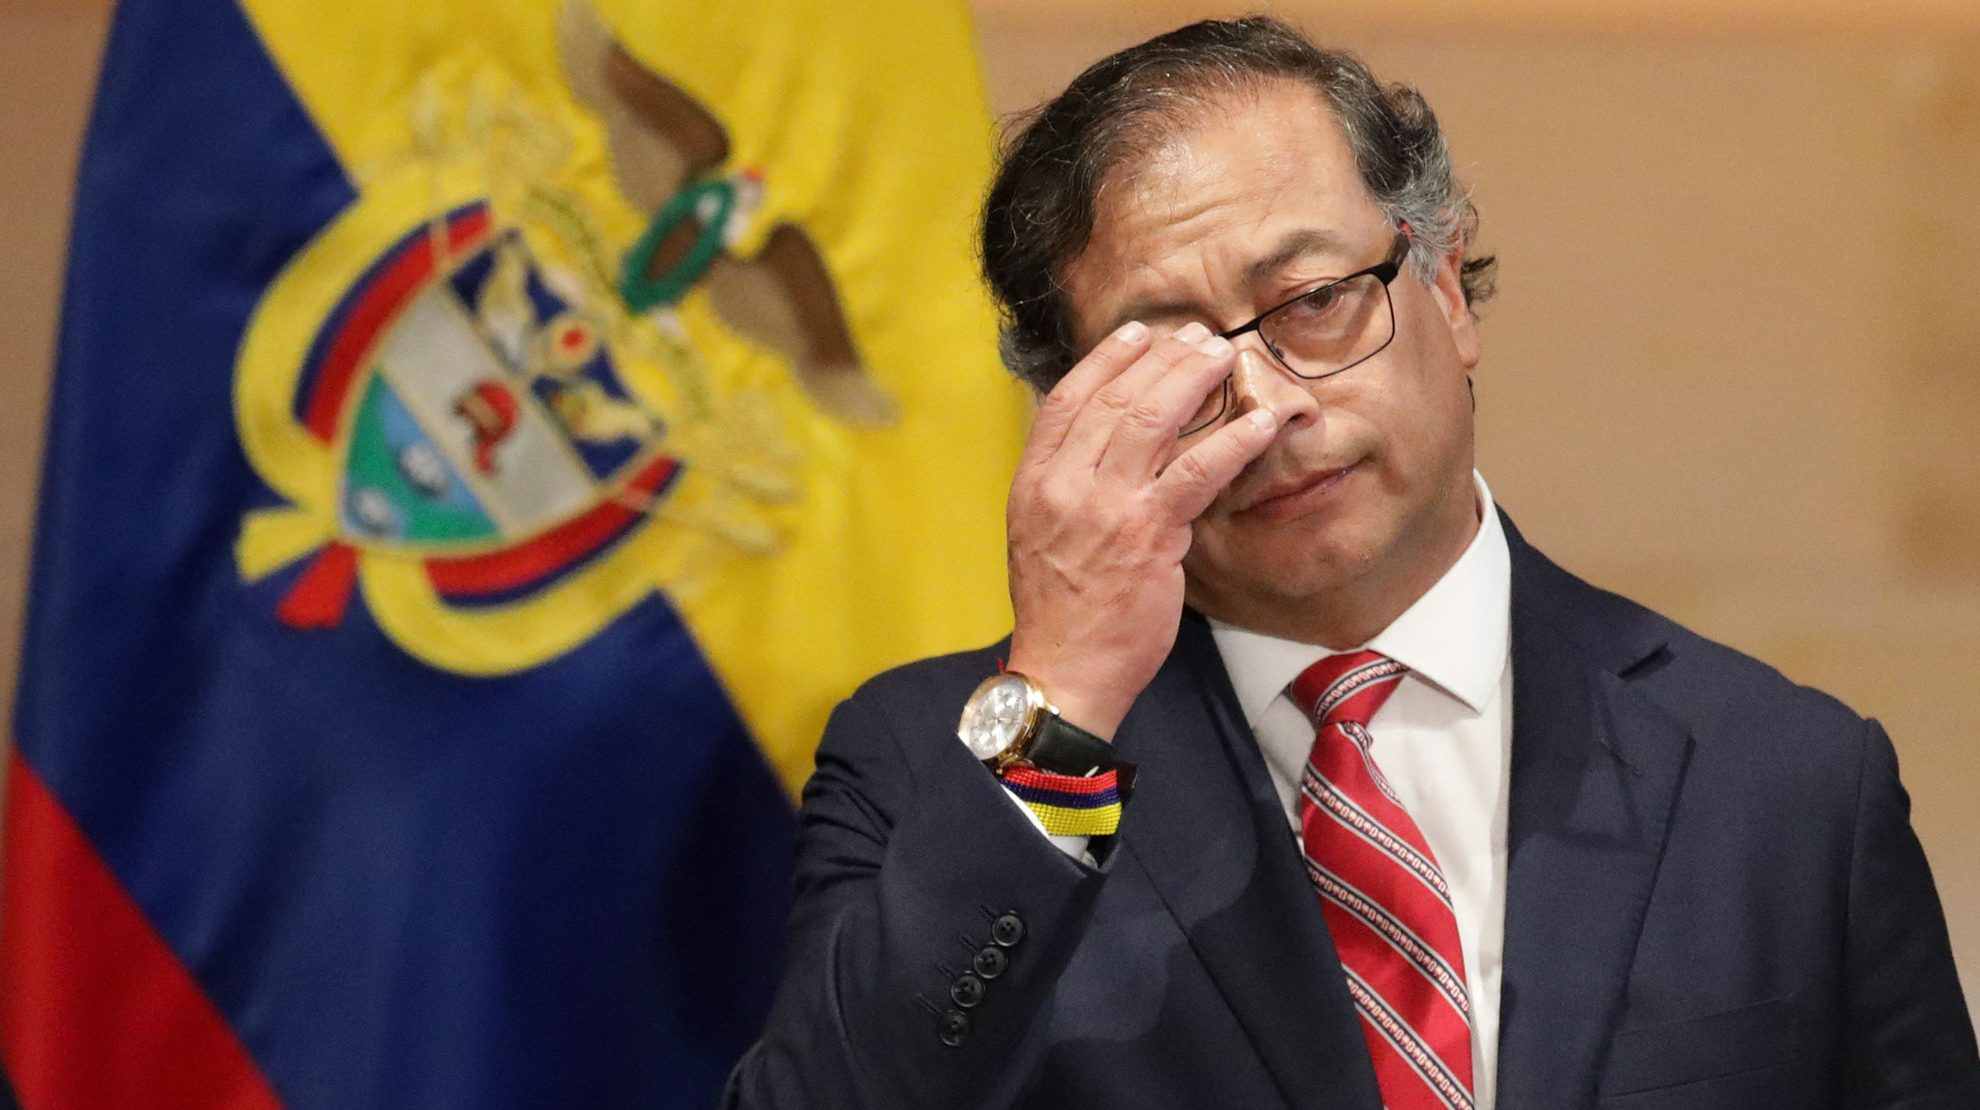 Polémica en Colombia: Petro desmiente afirmaciones de su hijo sobre financiamiento irregular